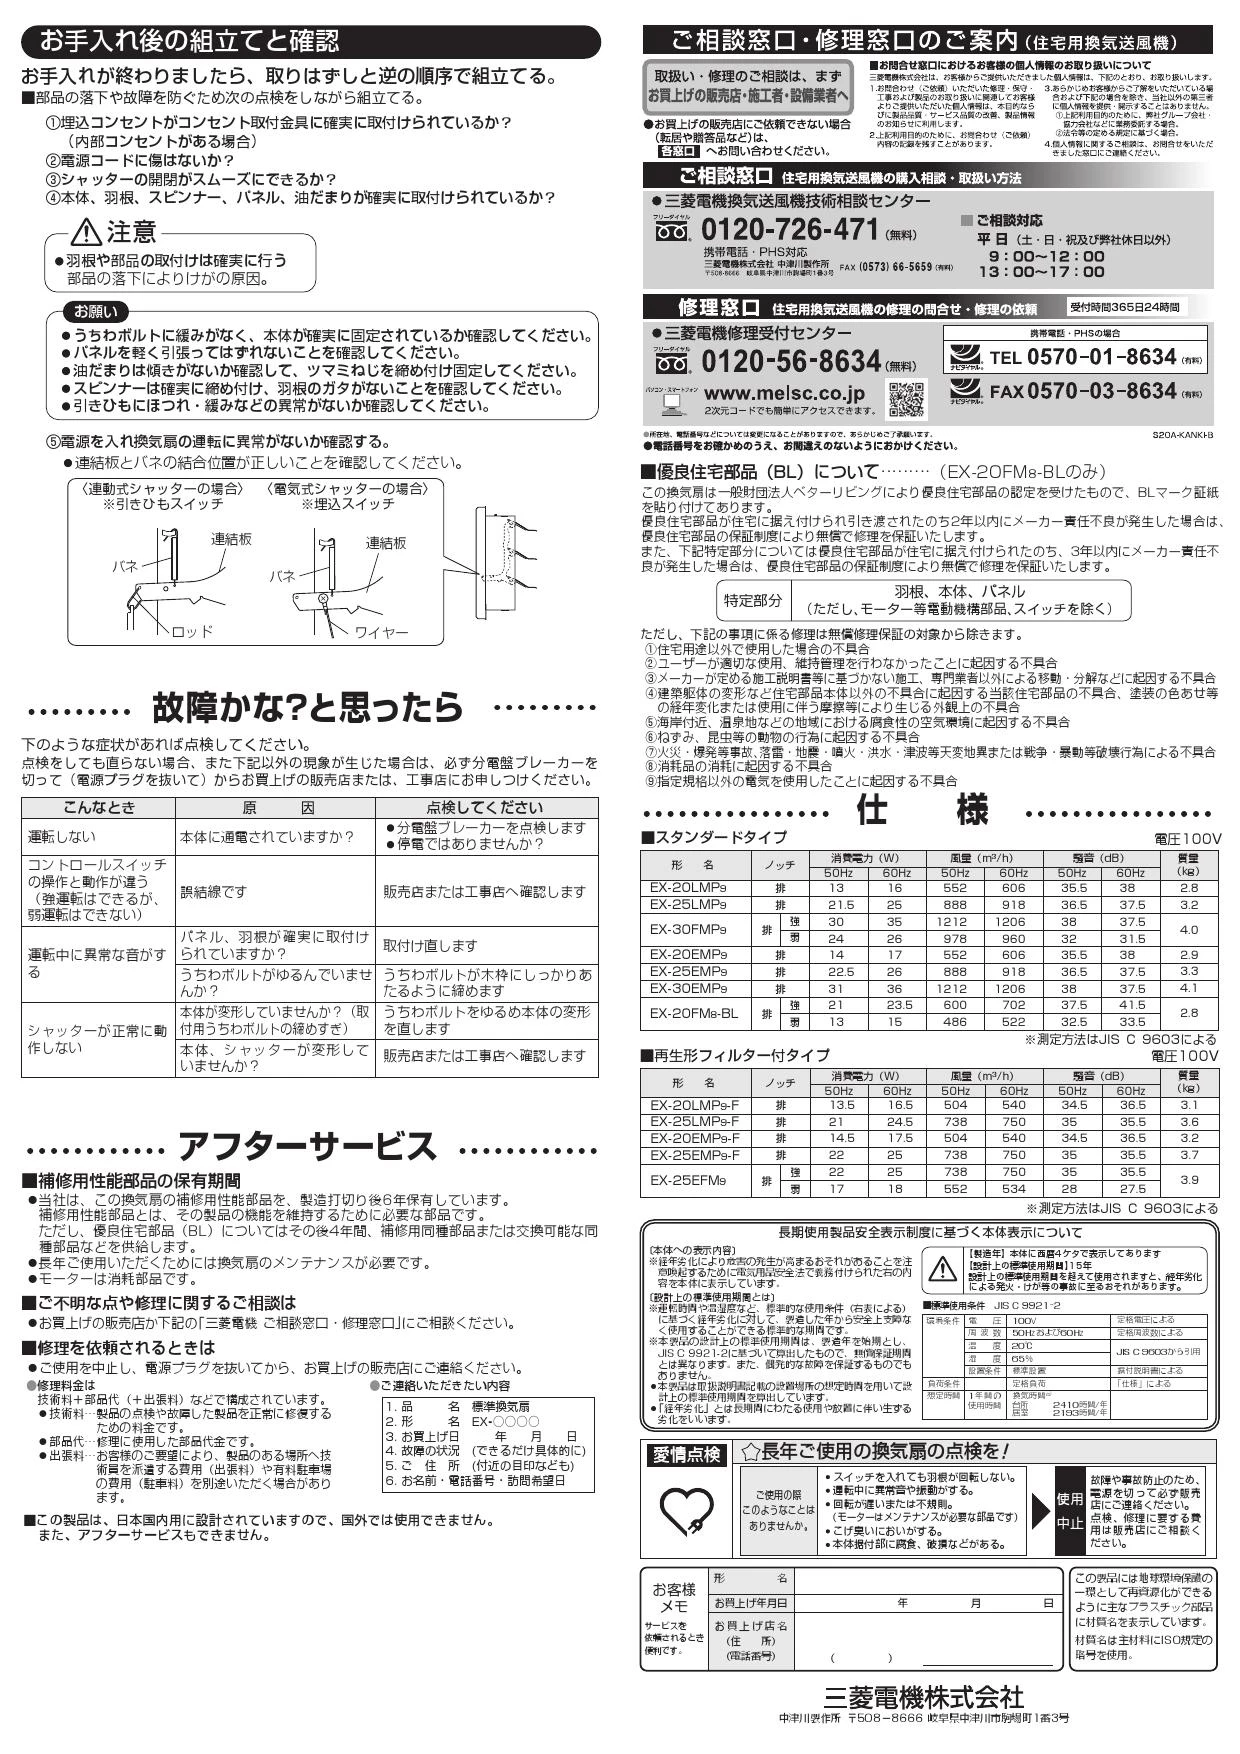 換気扇 三菱電機 MITSUBISHI EX-20EMP9-F